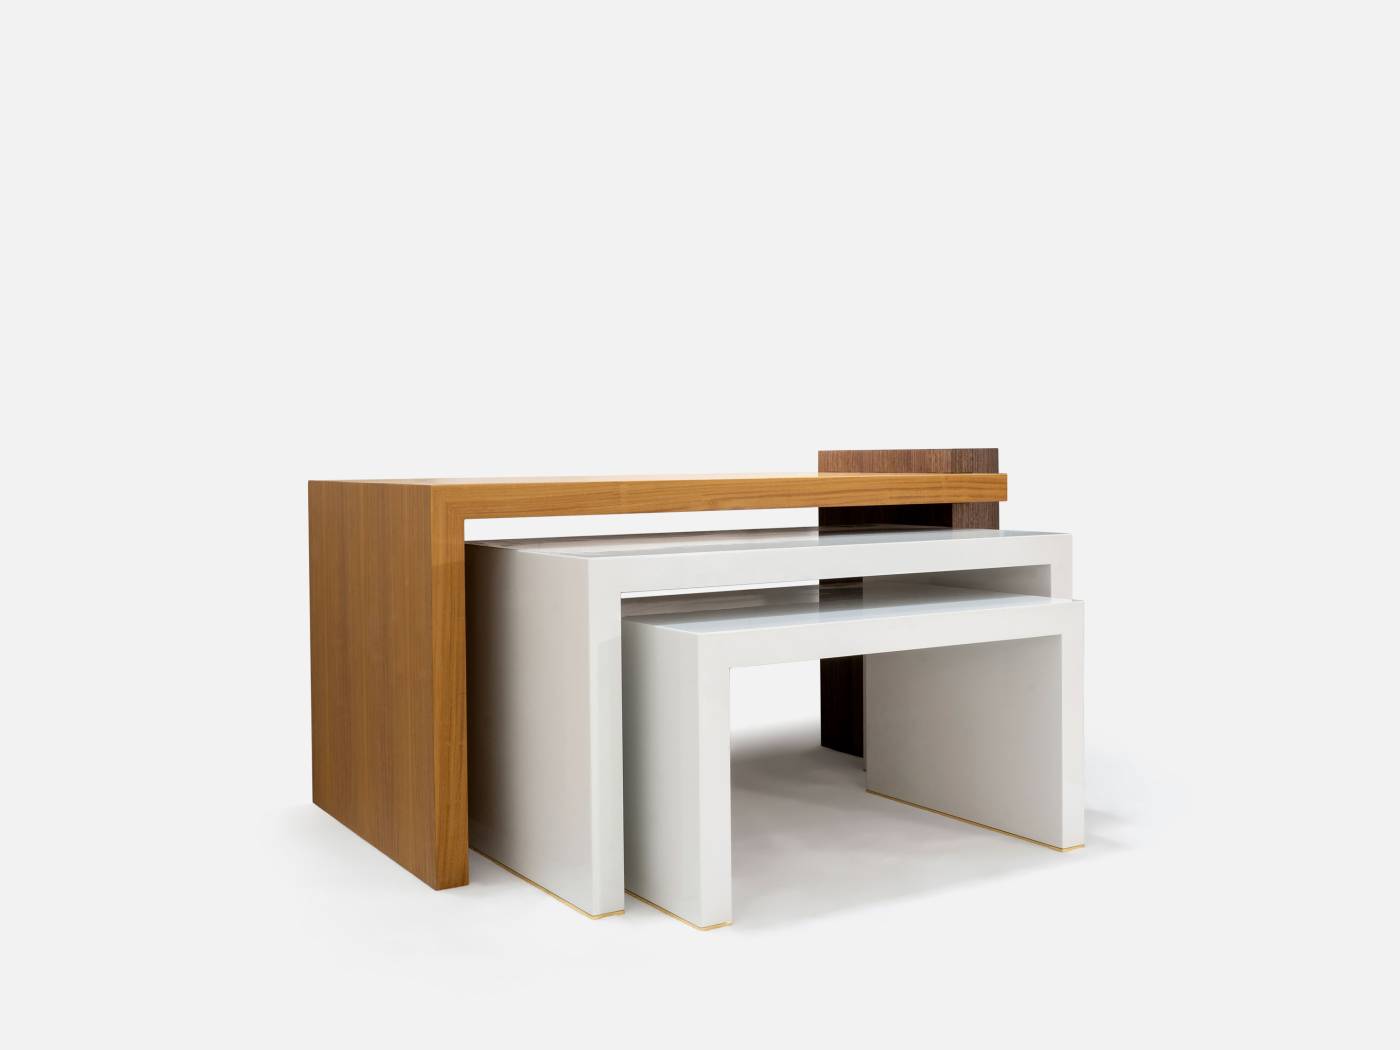 ART. 2281 – C.G. Capelletti Italian Luxury Classic Small tables. Made in Italy classic interior design